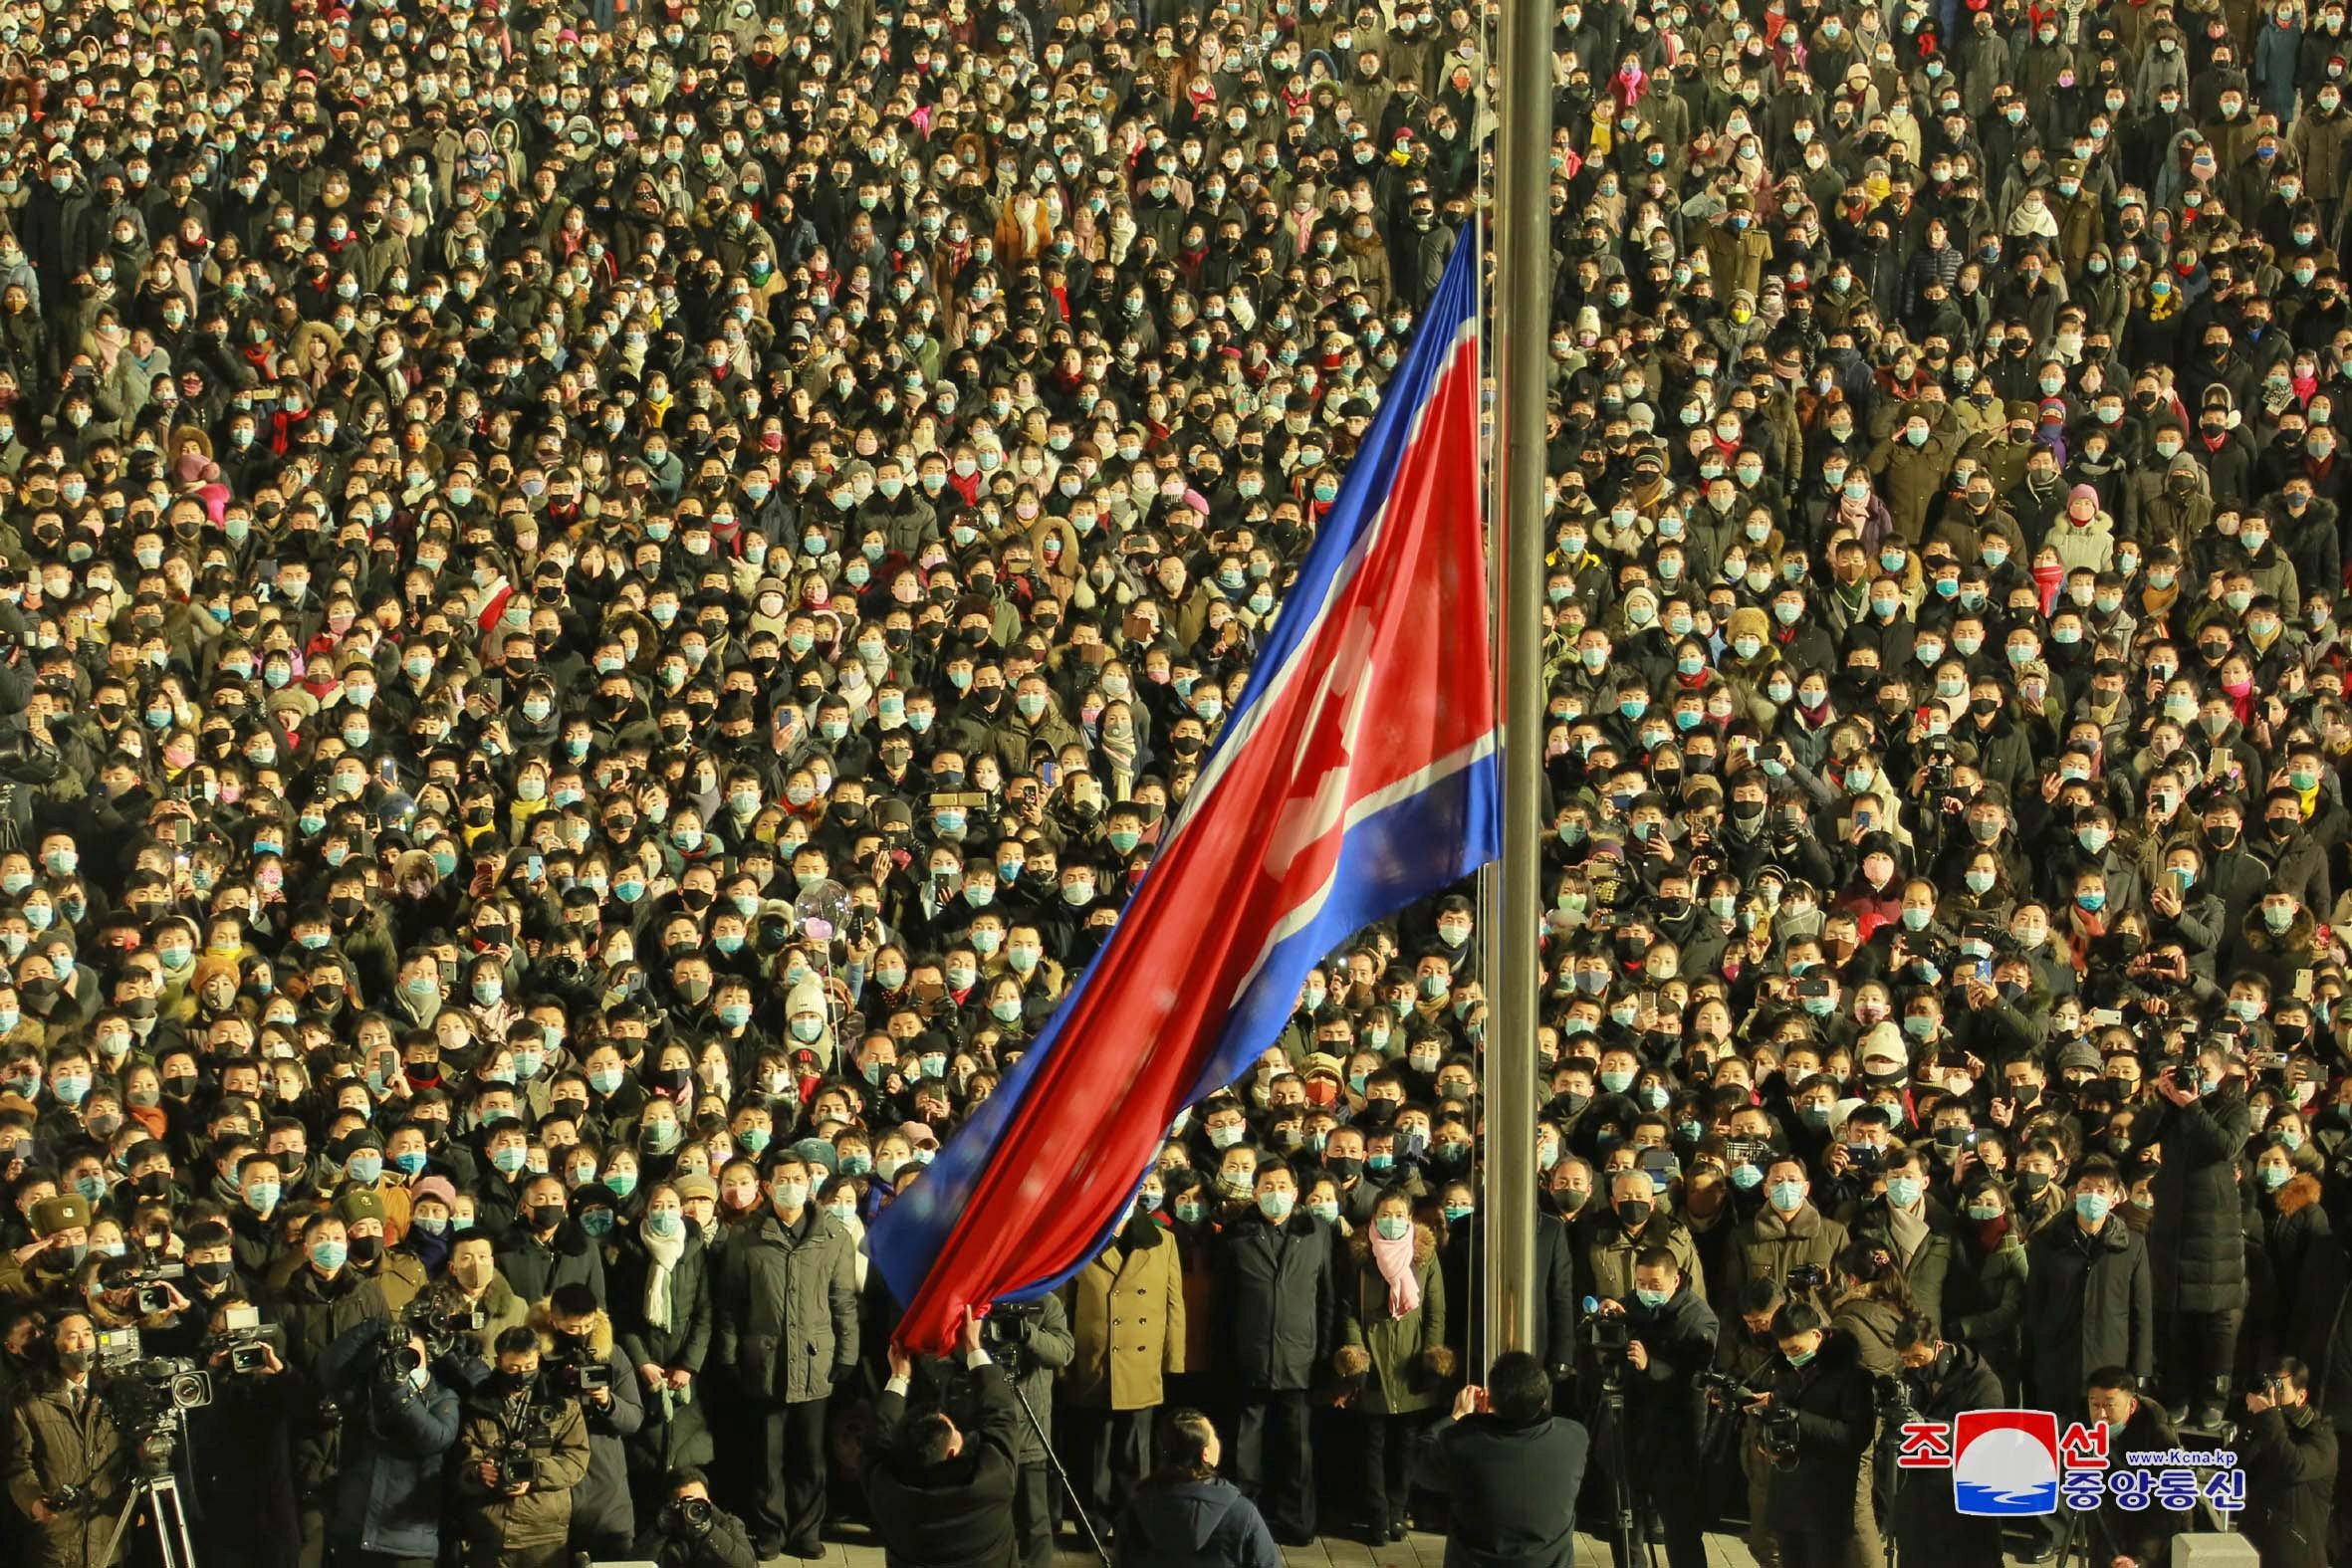 Kim Jong-un’s big plan to grow North Korea’s economy faces harsh reality